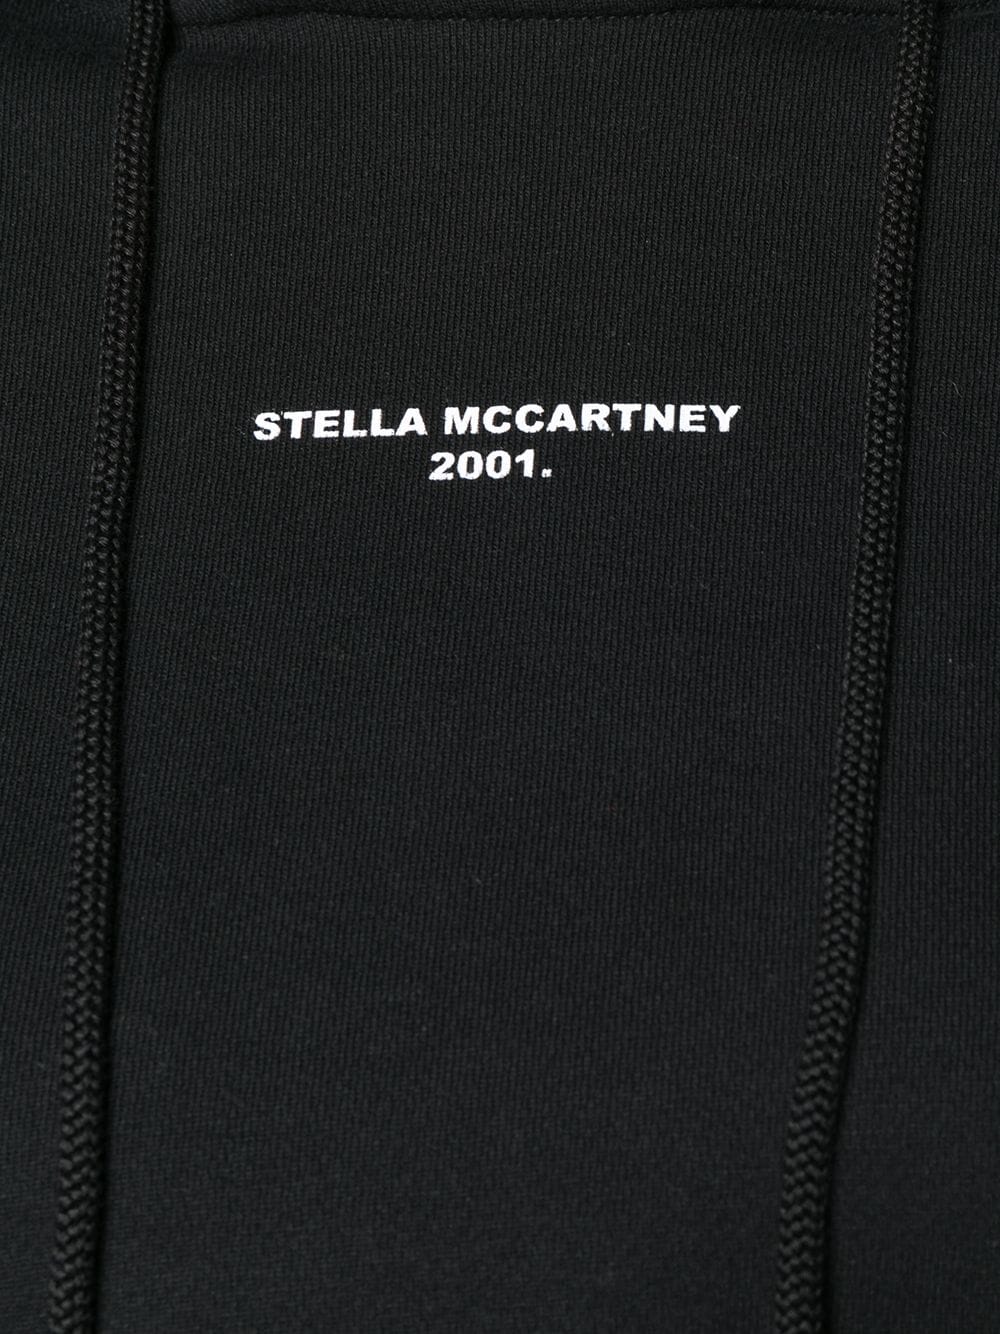 stella mccartney 2001 hoodie